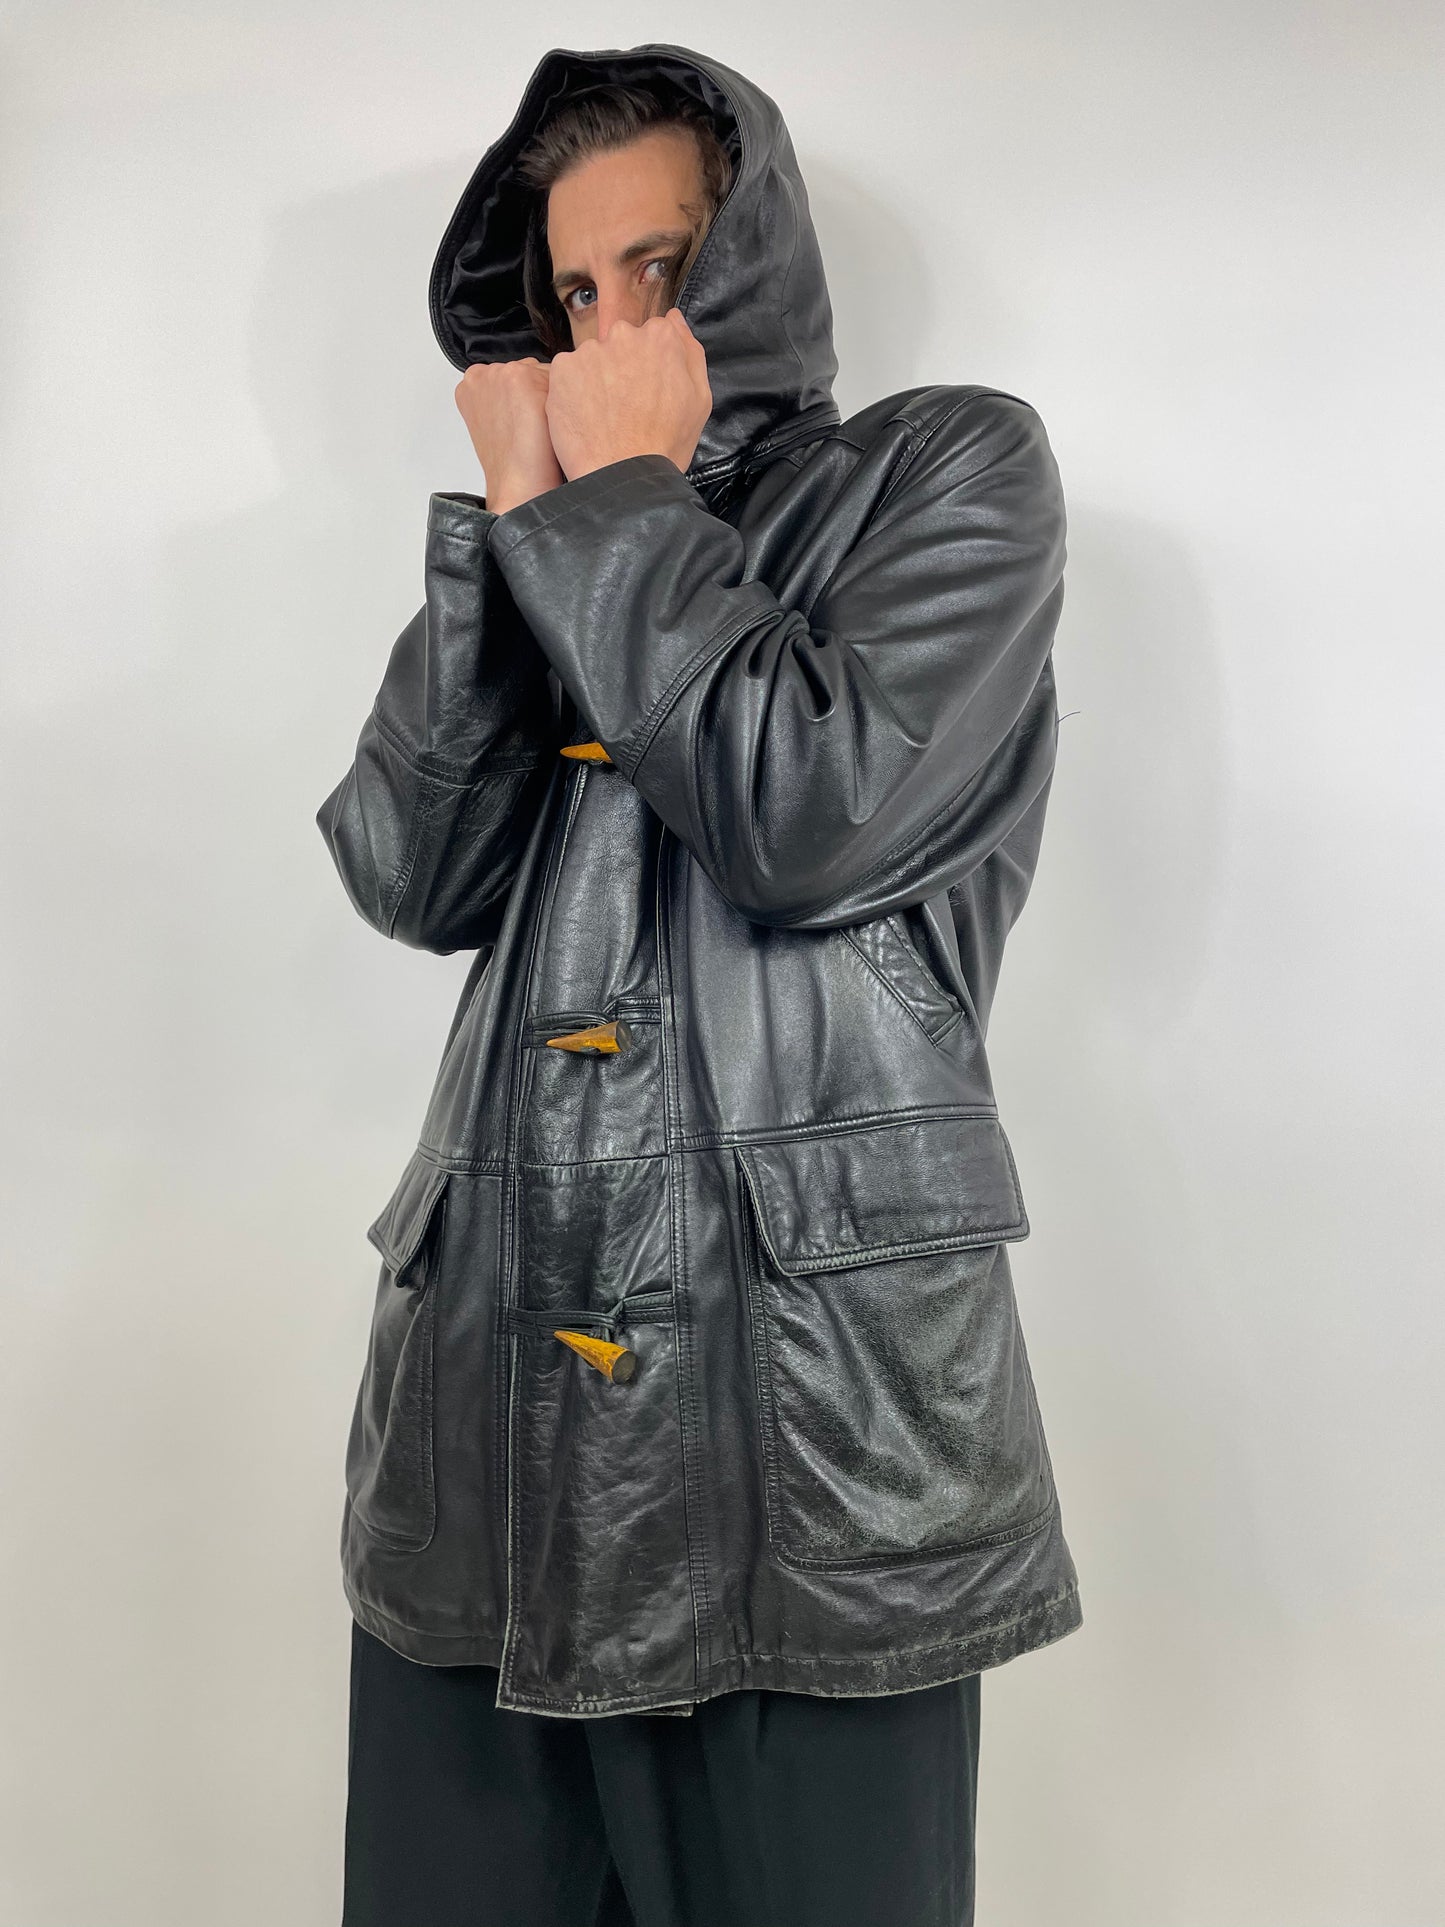 Pierre Cardin Leather Jacket 1980s